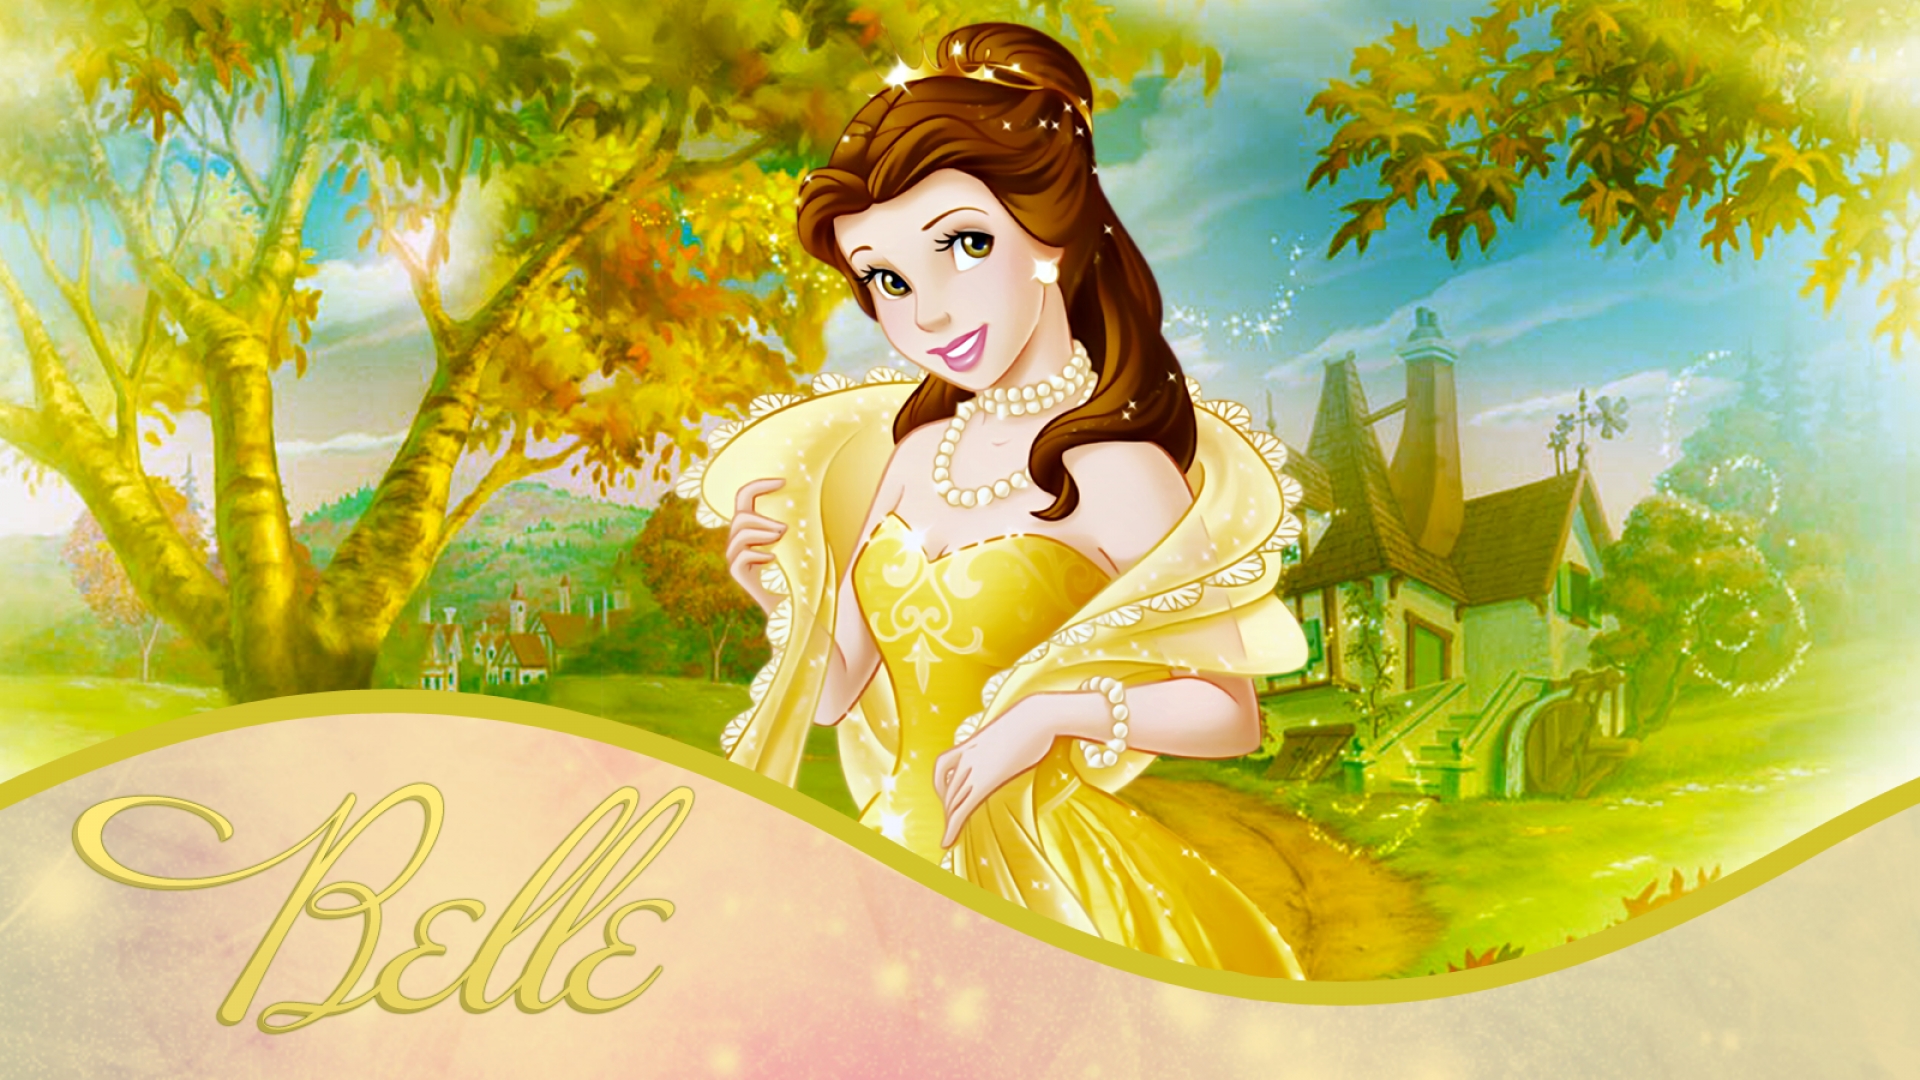 Belle online free